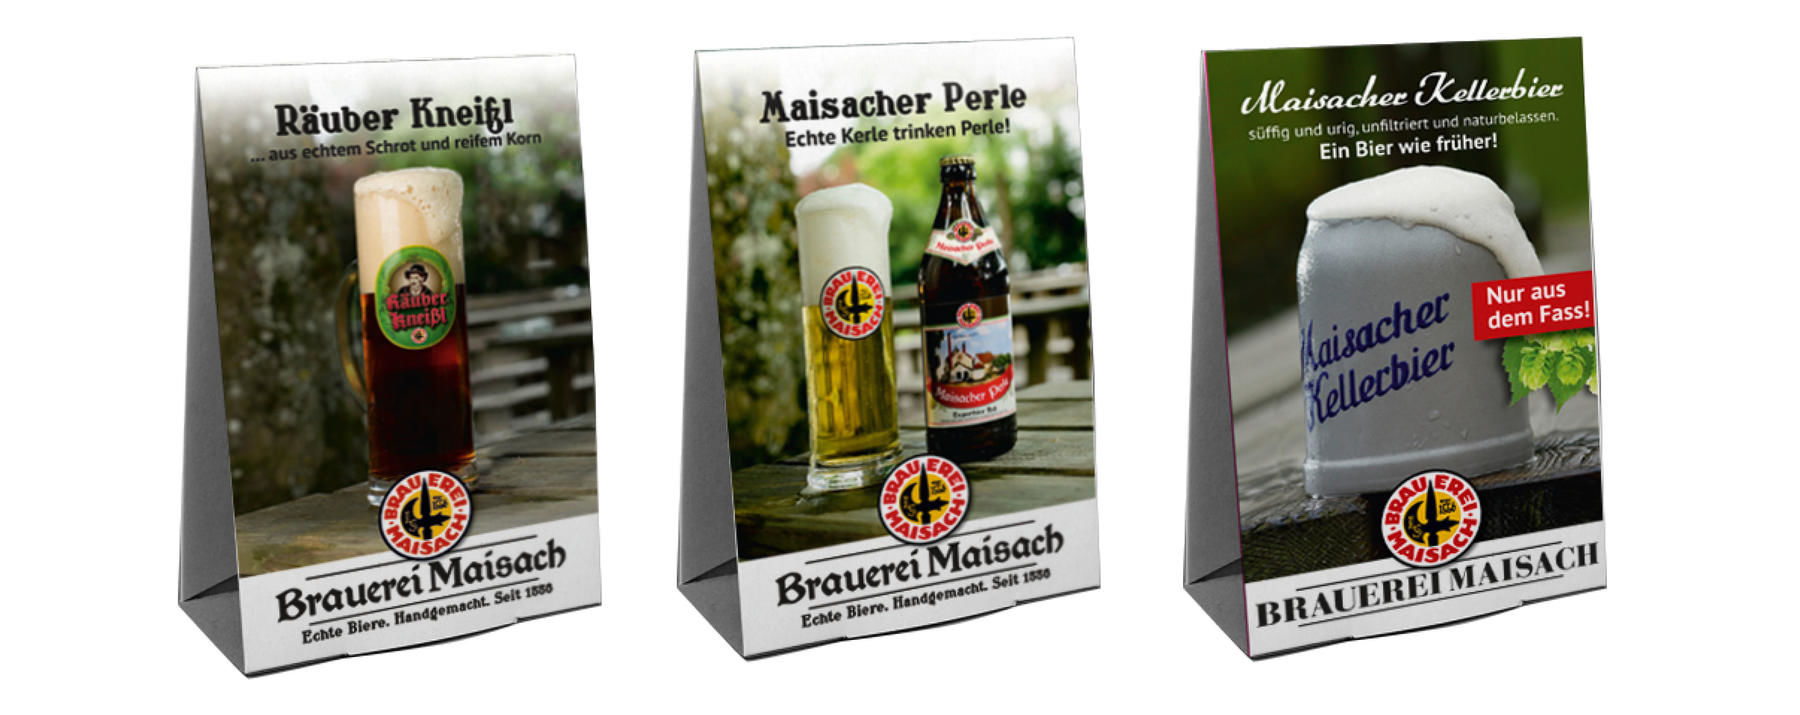 Brauerei Maisach, Corporate Design, Werbemittel